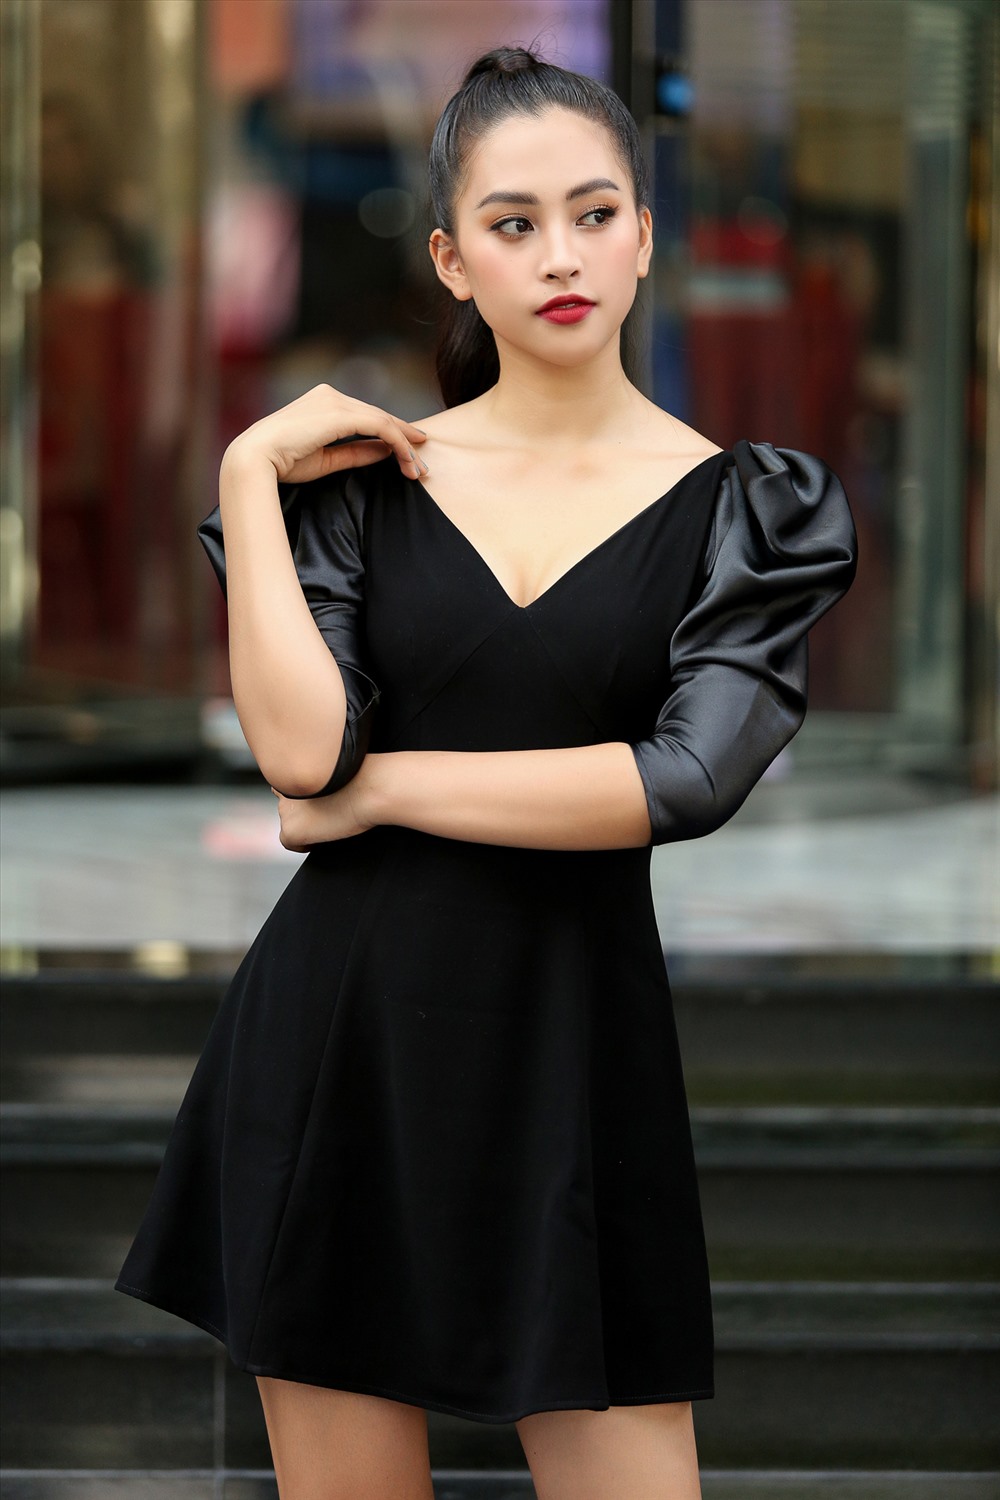 Với kinh nghiệm trên các đấu trường sắc đẹp: Hoa hậu Việt Nam 2018, Miss World Việt Nam 2018, Tiểu Vy có đầy đủ bản lĩnh và trọng trách của một người đi trước với kinh nghiệm chinh chiến trên các đấu trường nhan sắc. Ảnh: MWVN.